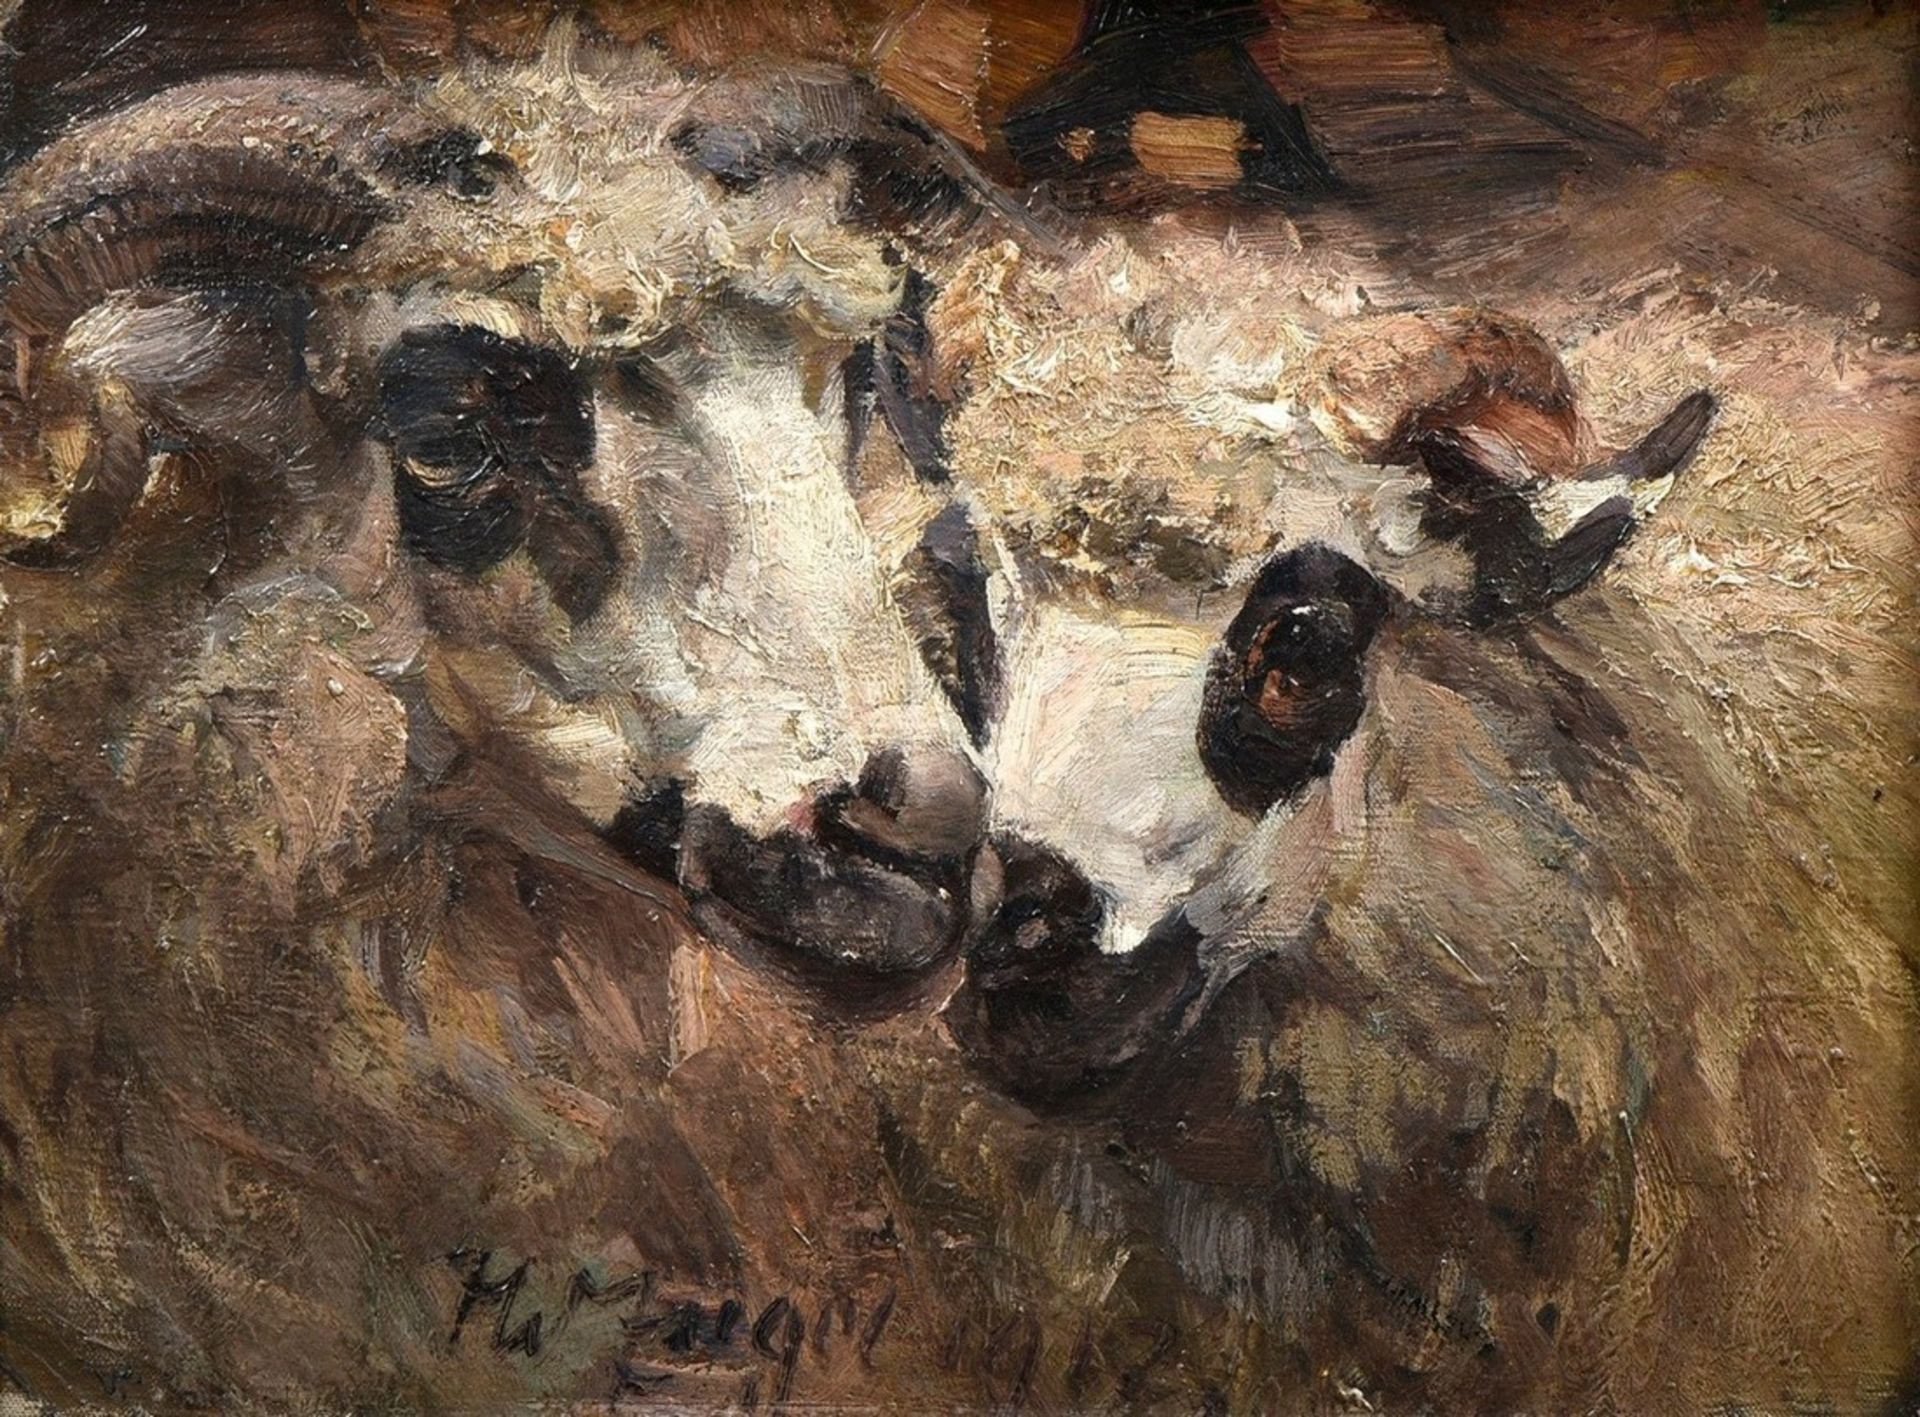 Zügel, Heinrich von (1850-1941) "Mutton and Sheep" 1912, oil/canvas, b. sign./dat., 41,5x55,5cm (w.